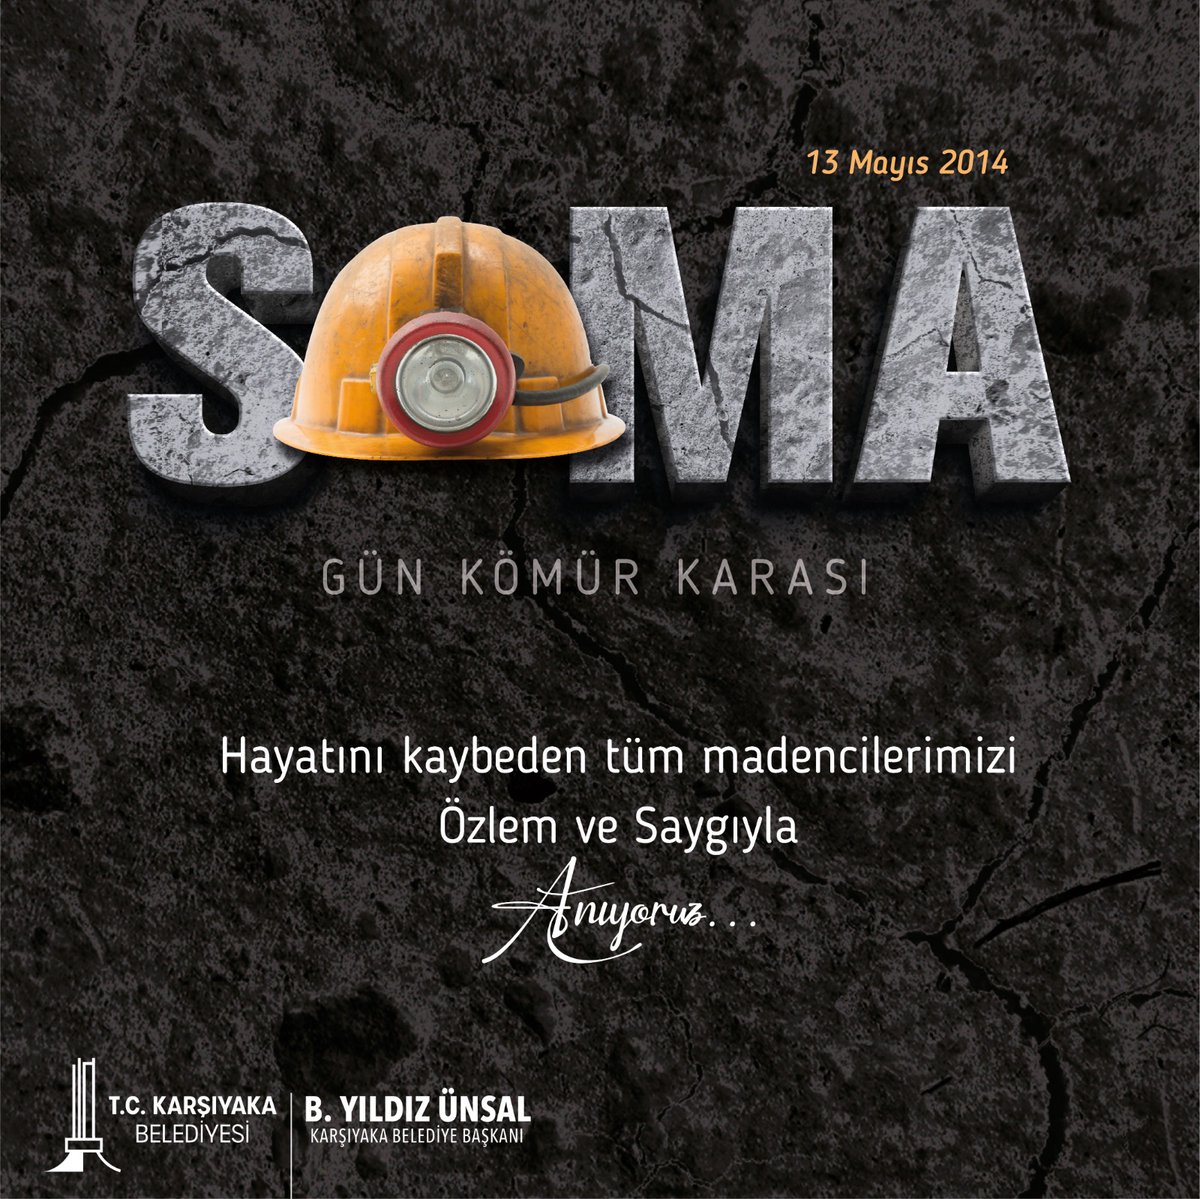 On yıl önce bugün yüreğimizi yakan #SomaFaciası’nda yaşamını yitiren madencilerimizi rahmetle anıyorum. En büyük dileğimiz, ülkemizde faciaların yeniden yaşanmaması için gerekli önlemlerin bir an önce alınması. #SomayıUnutma